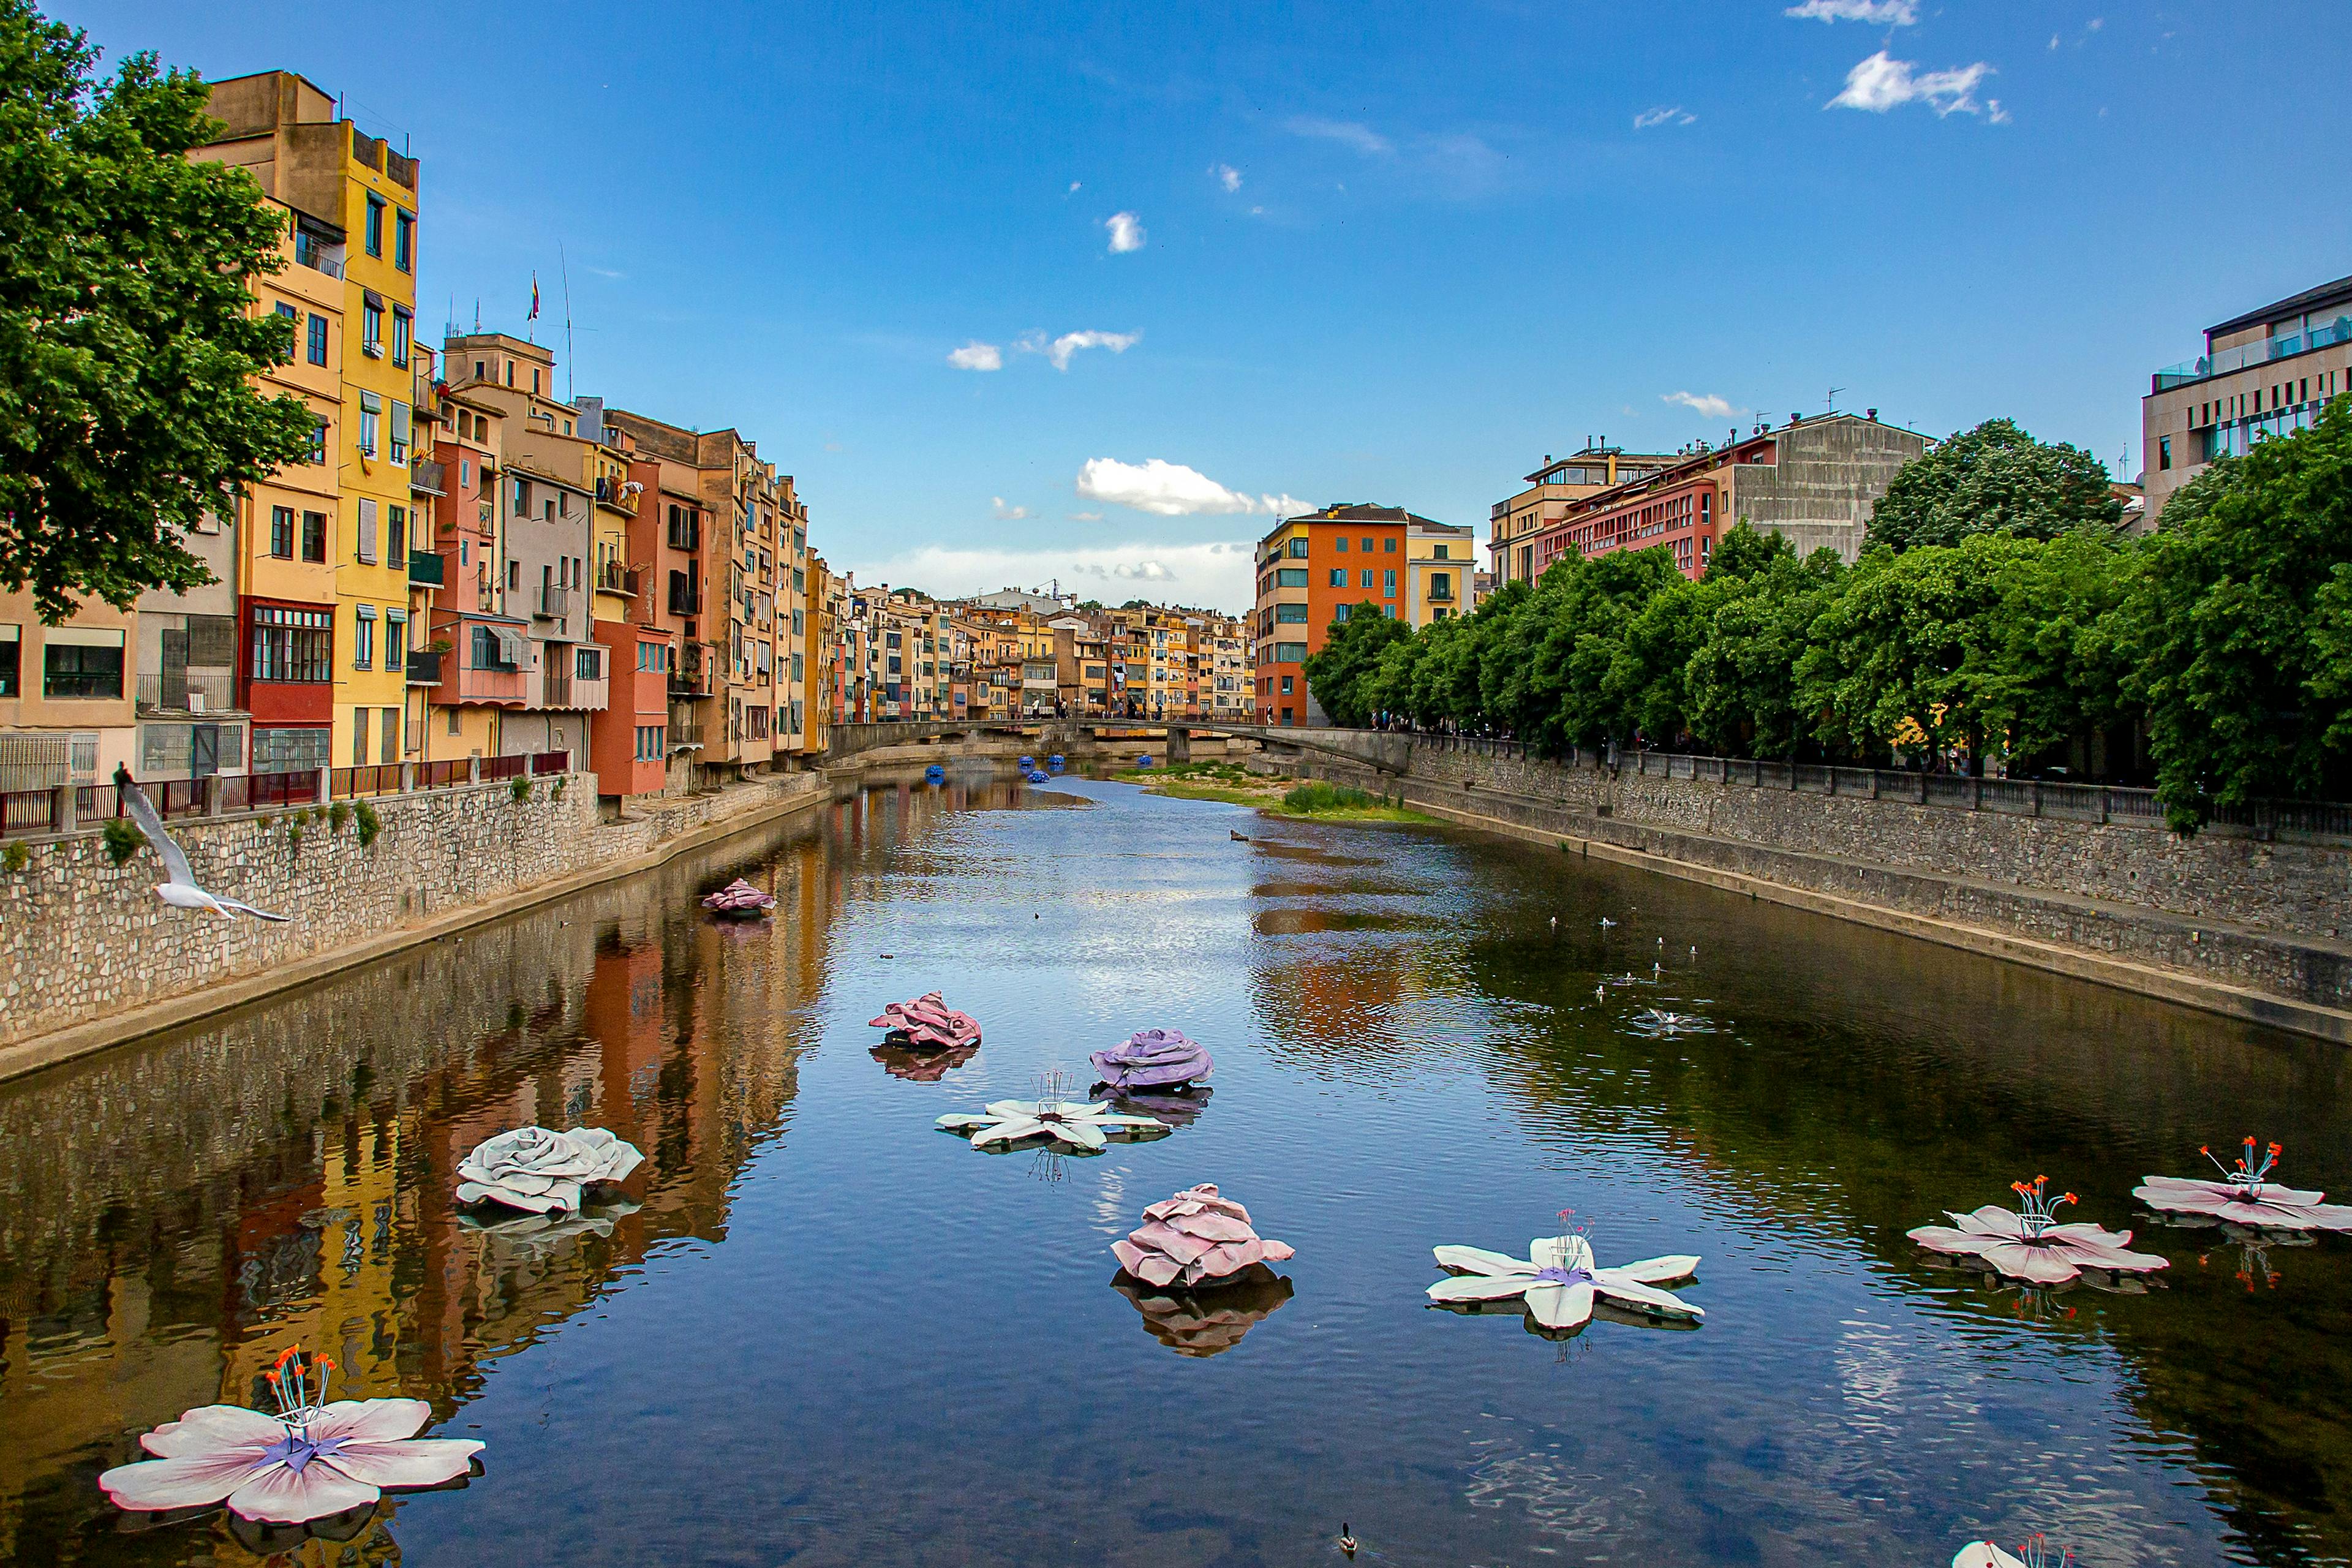 El río Girona adornado con flores flotantes, creando una pintoresca escena de belleza natural.